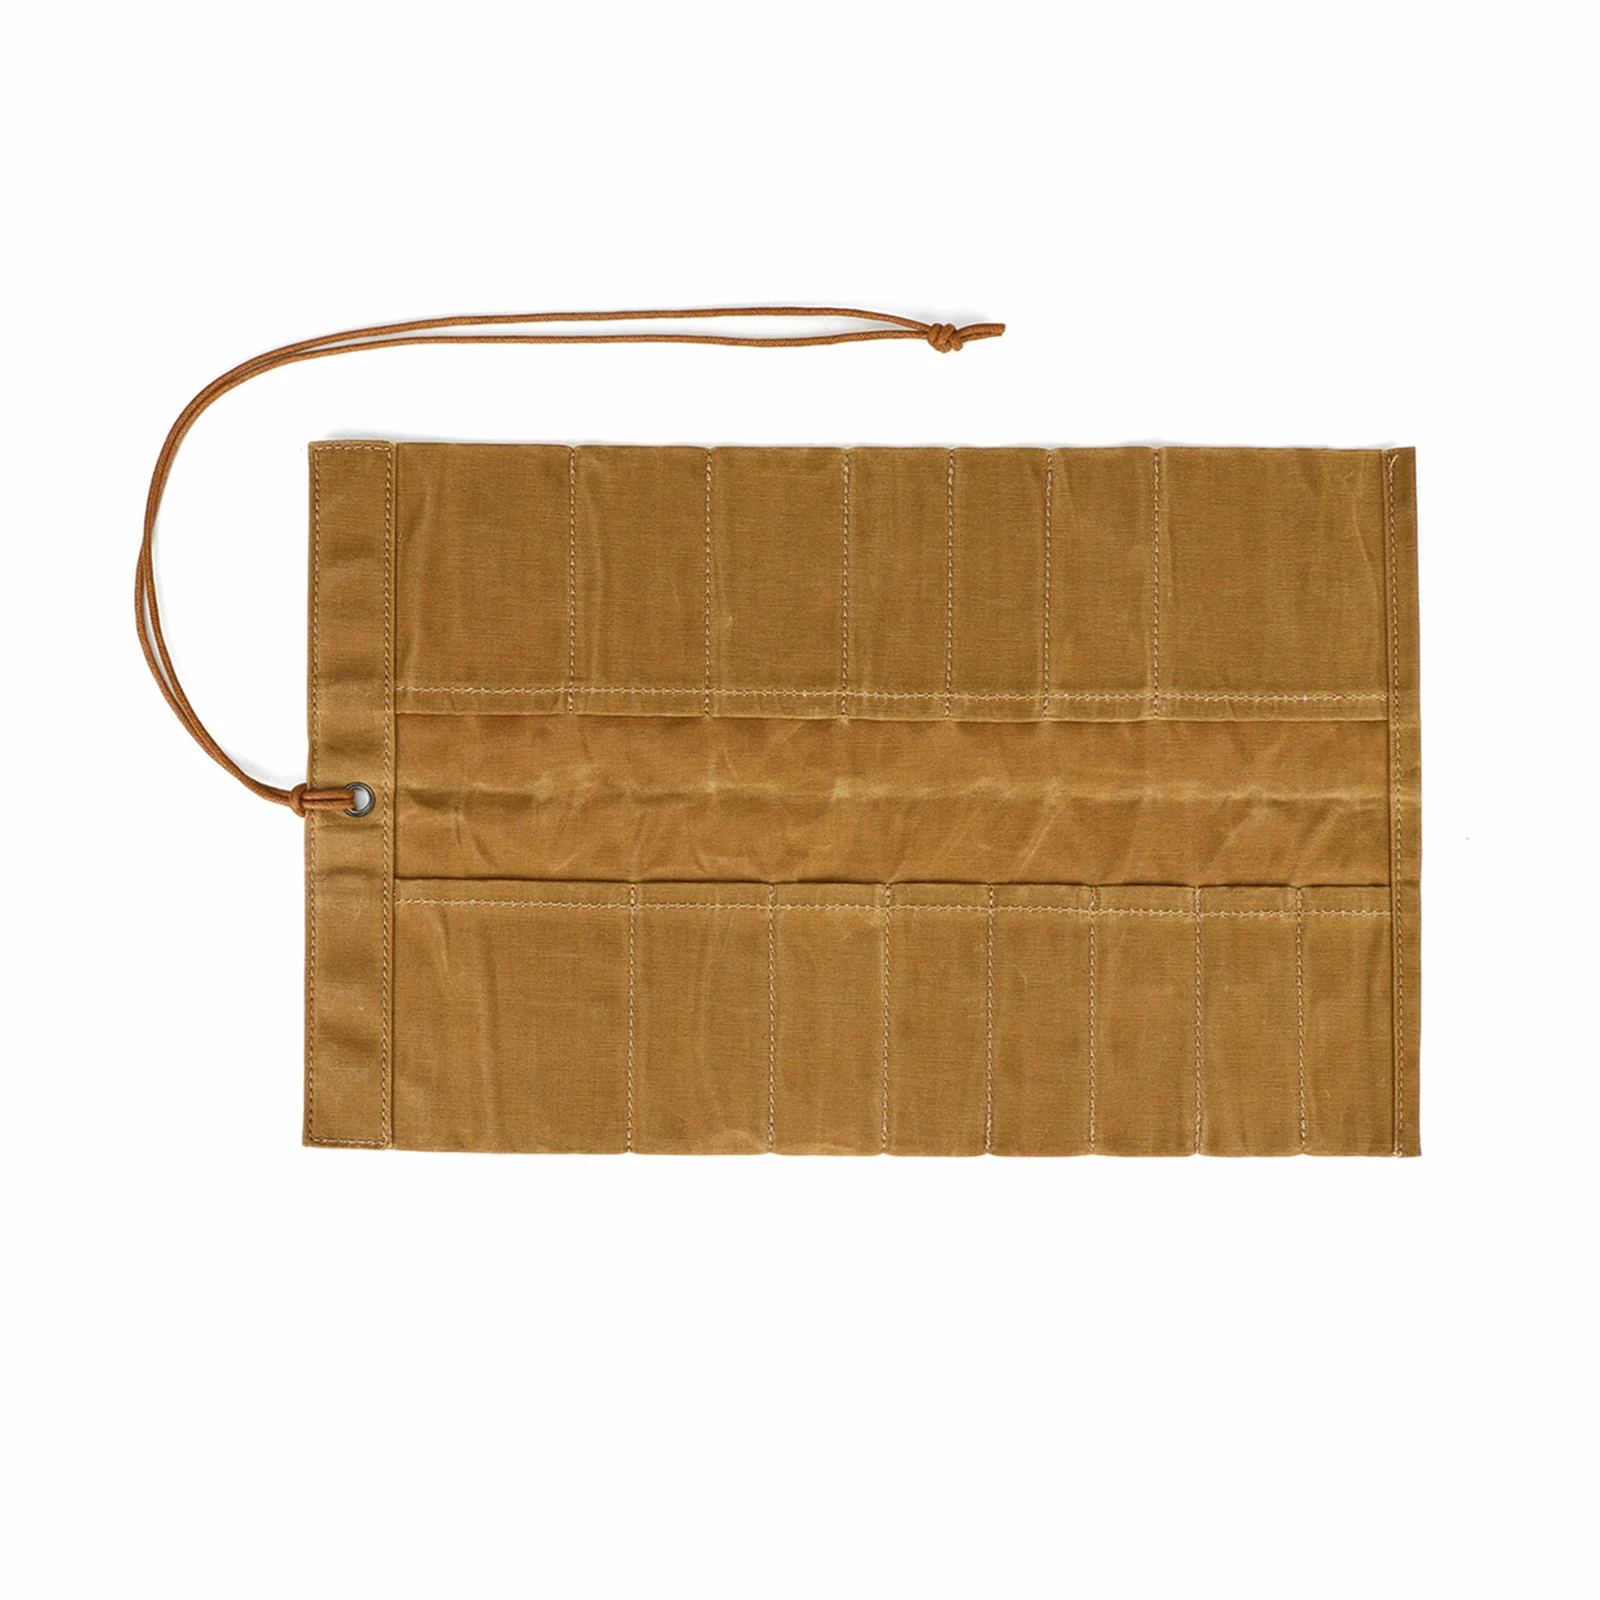 Tourbon plátna skládací nástroje rolovat nahoře sáček (14 slots)portable nést pouch dílna úložný splier nářadí organizátor dřevoobráběcí